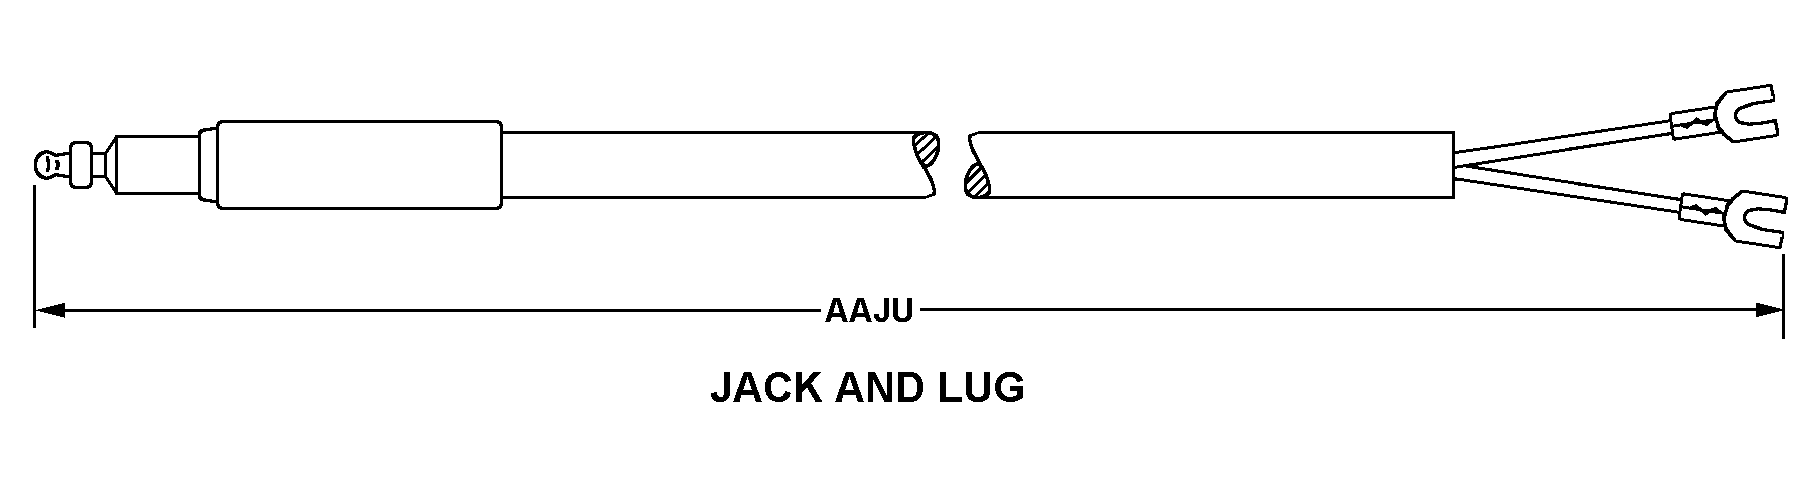 JACK AND LUG style nsn 6150-01-146-9654